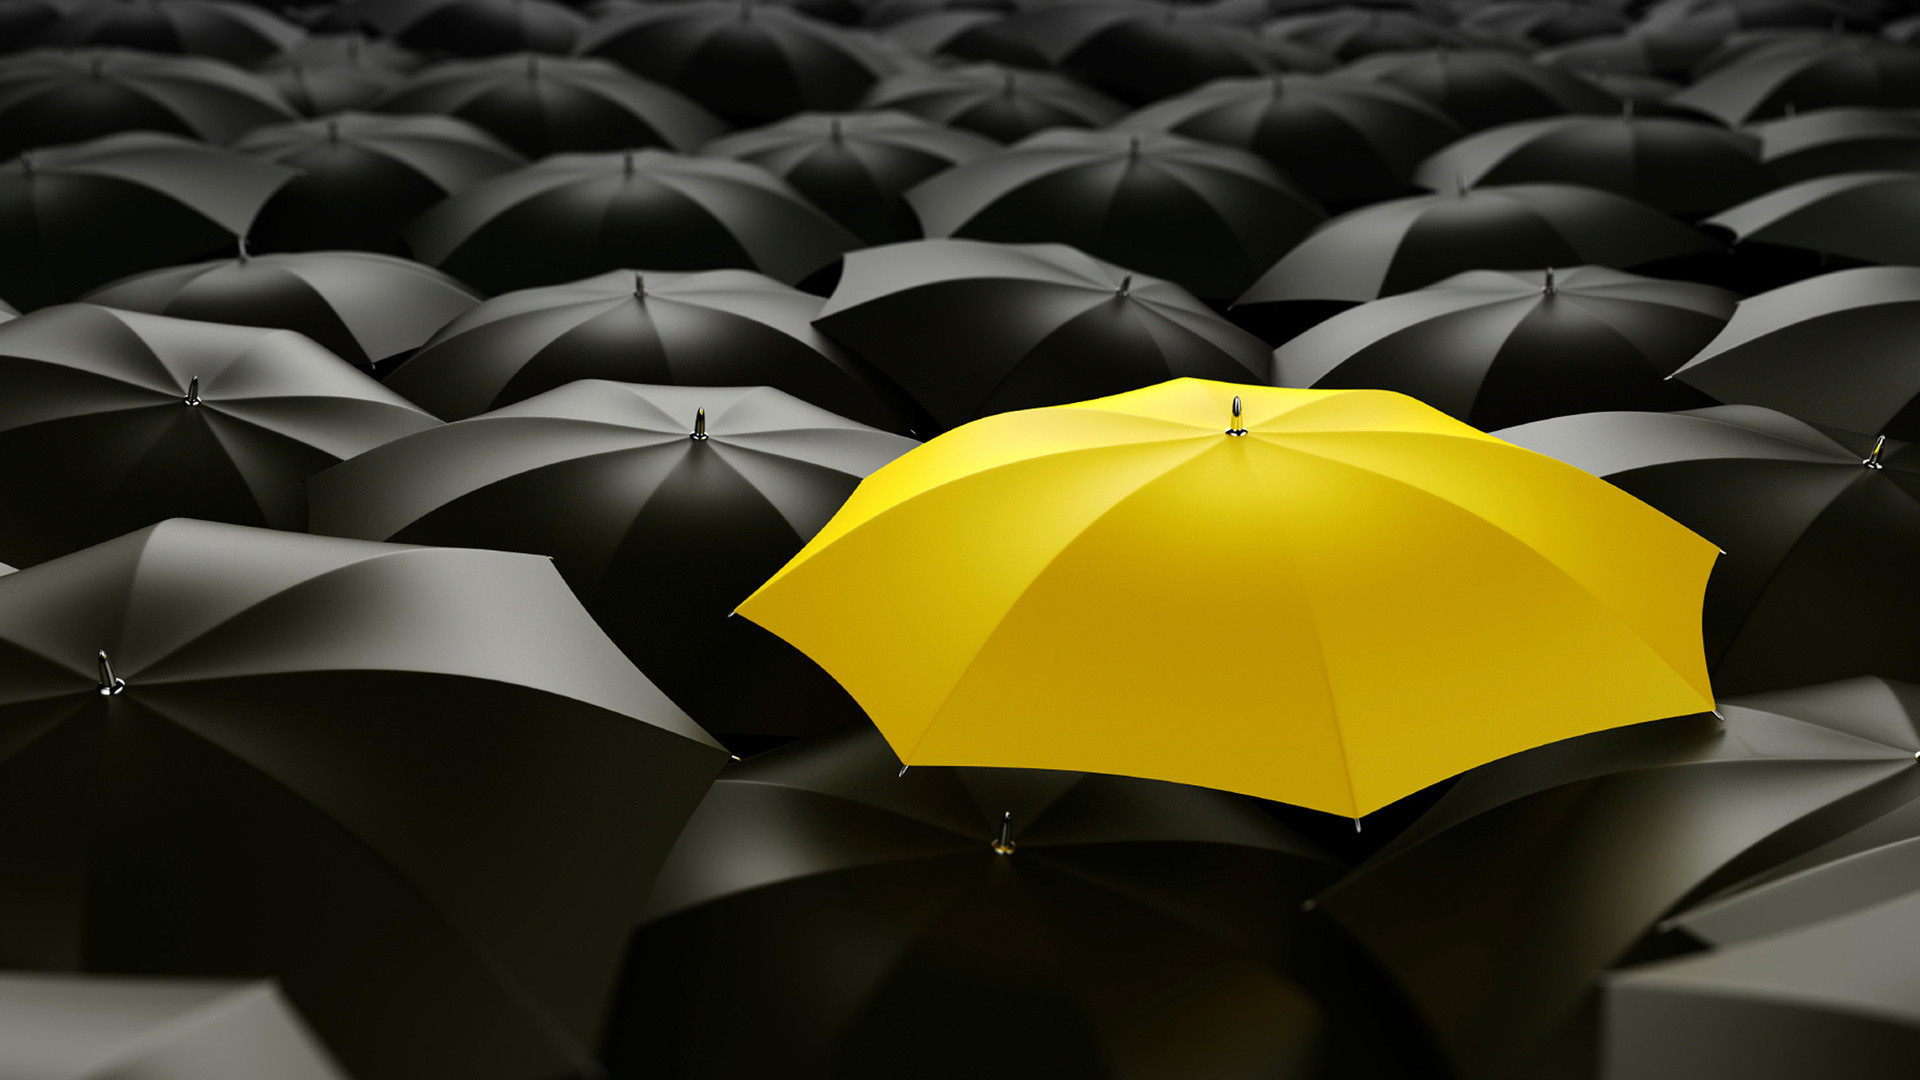 1920x1080 Innovations, Umbrellas, Yellow Umbrella, Black Umbrellas, Innovation